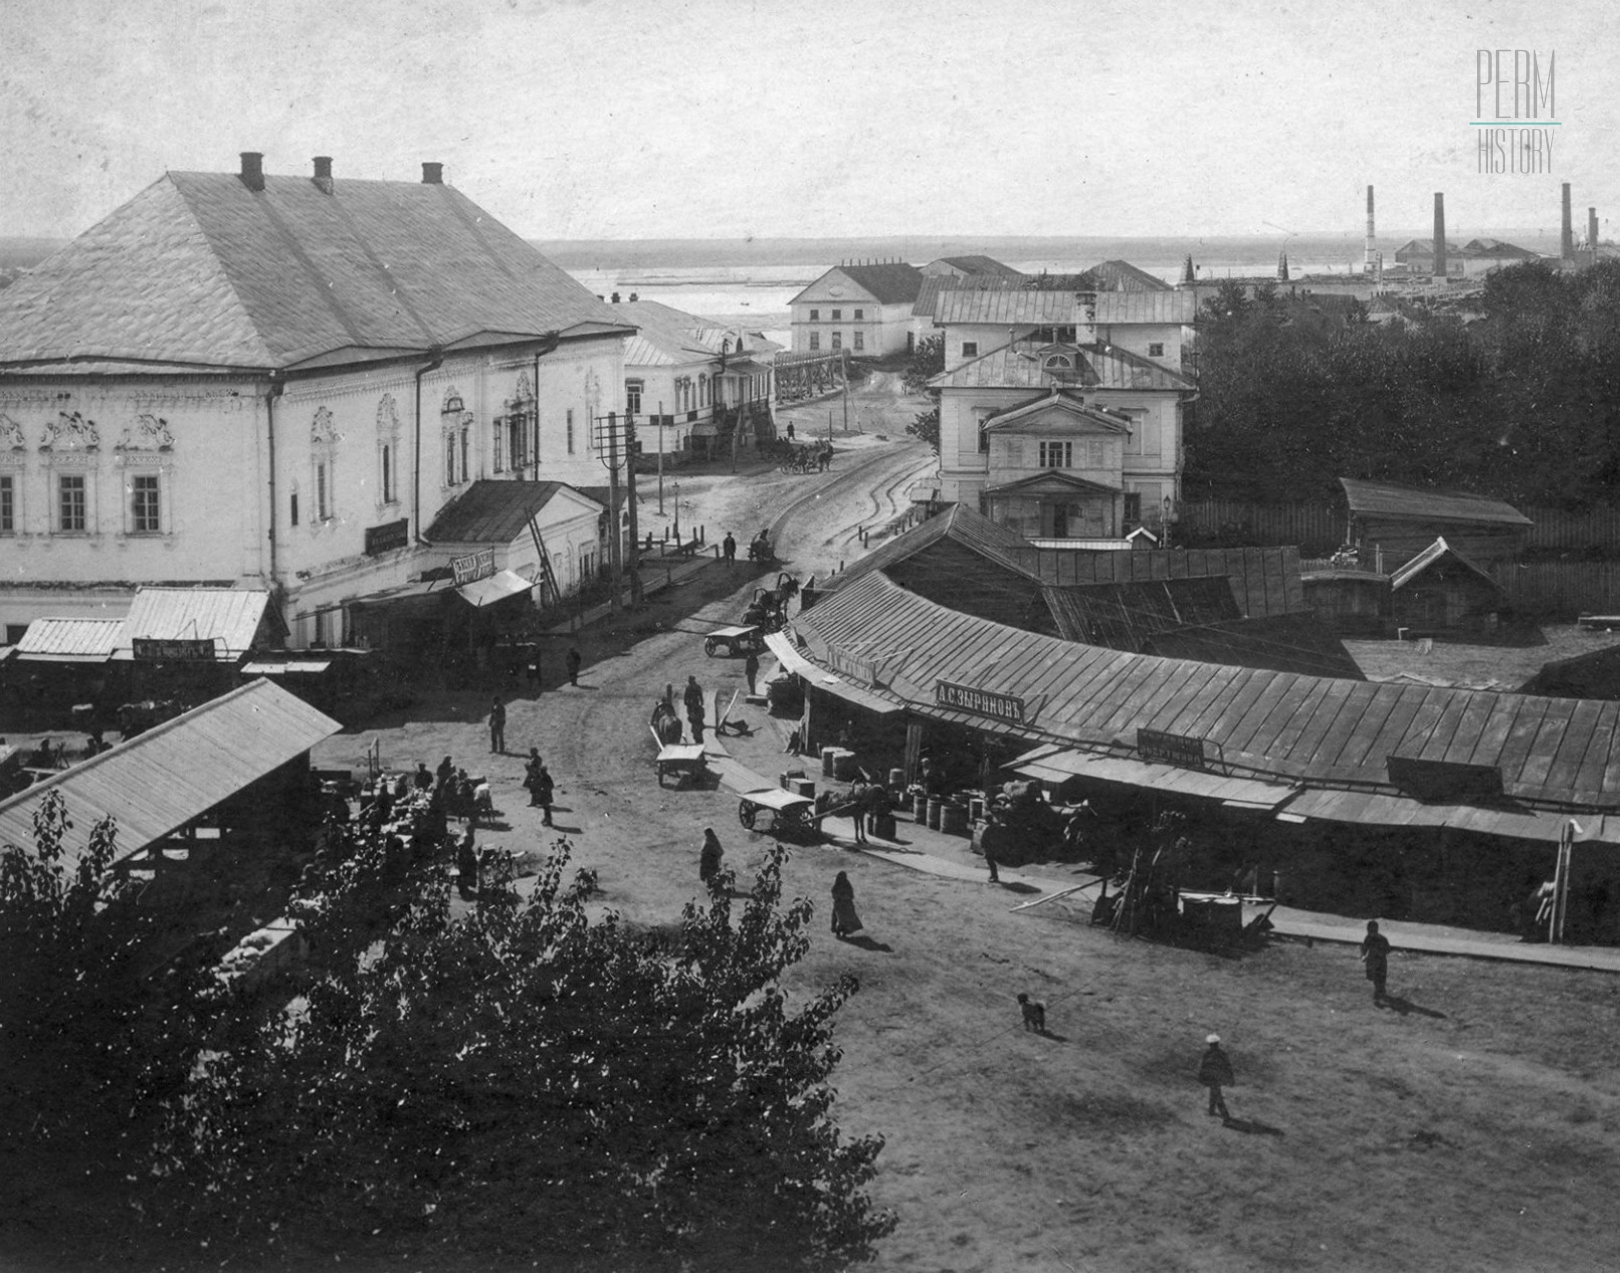 фото пермь общий вид 1910 год